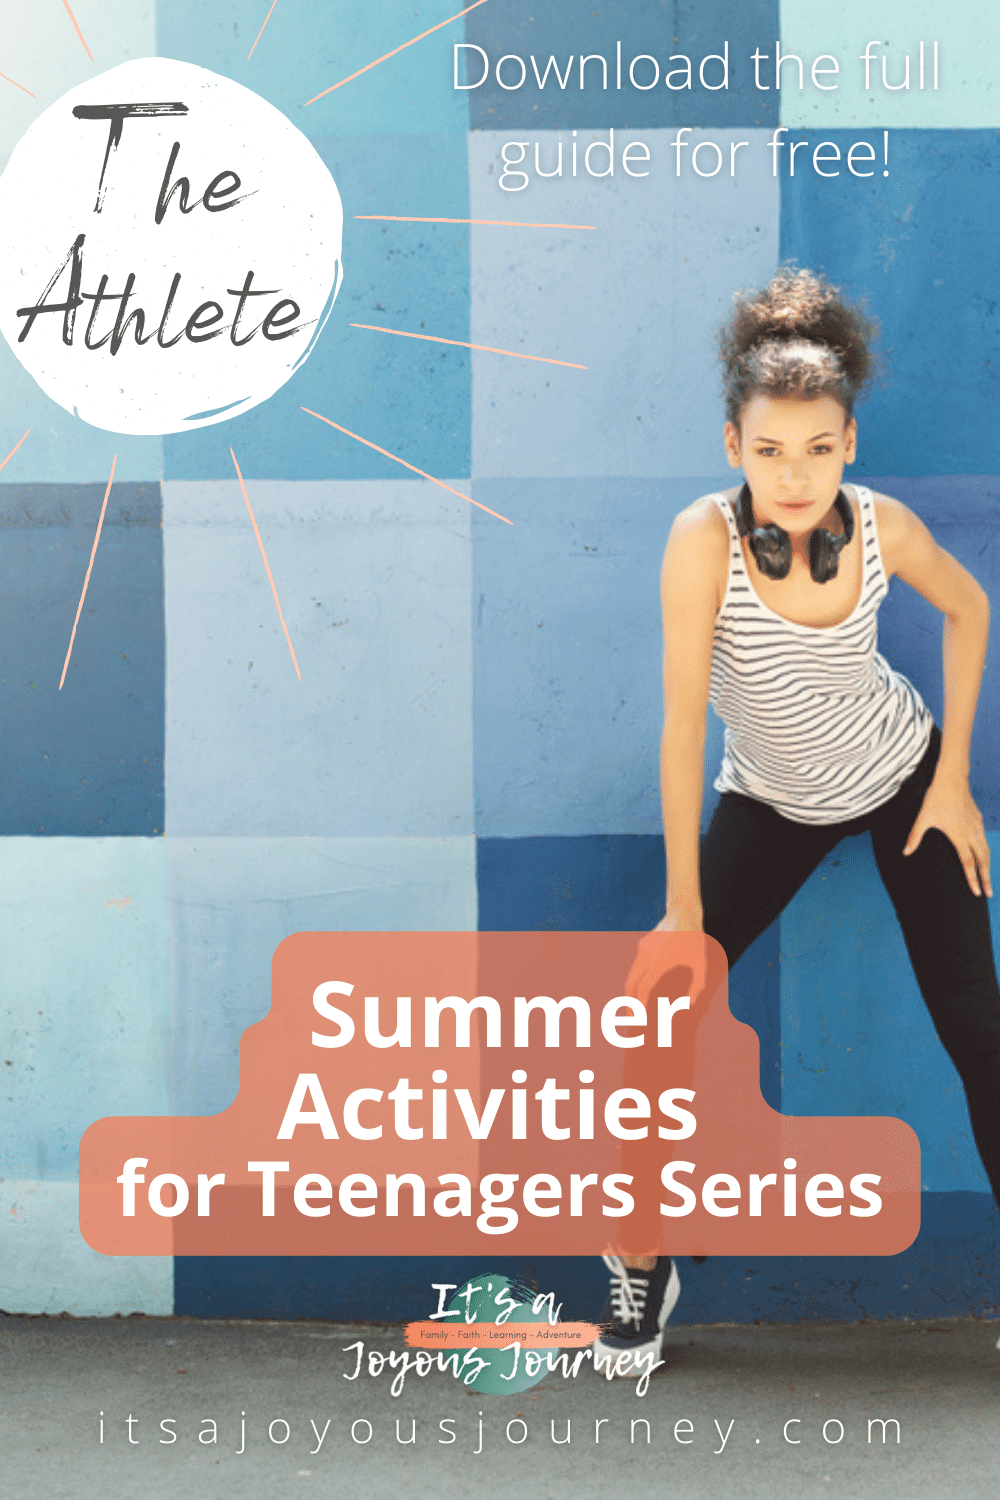 Summer Activities for Teenagers